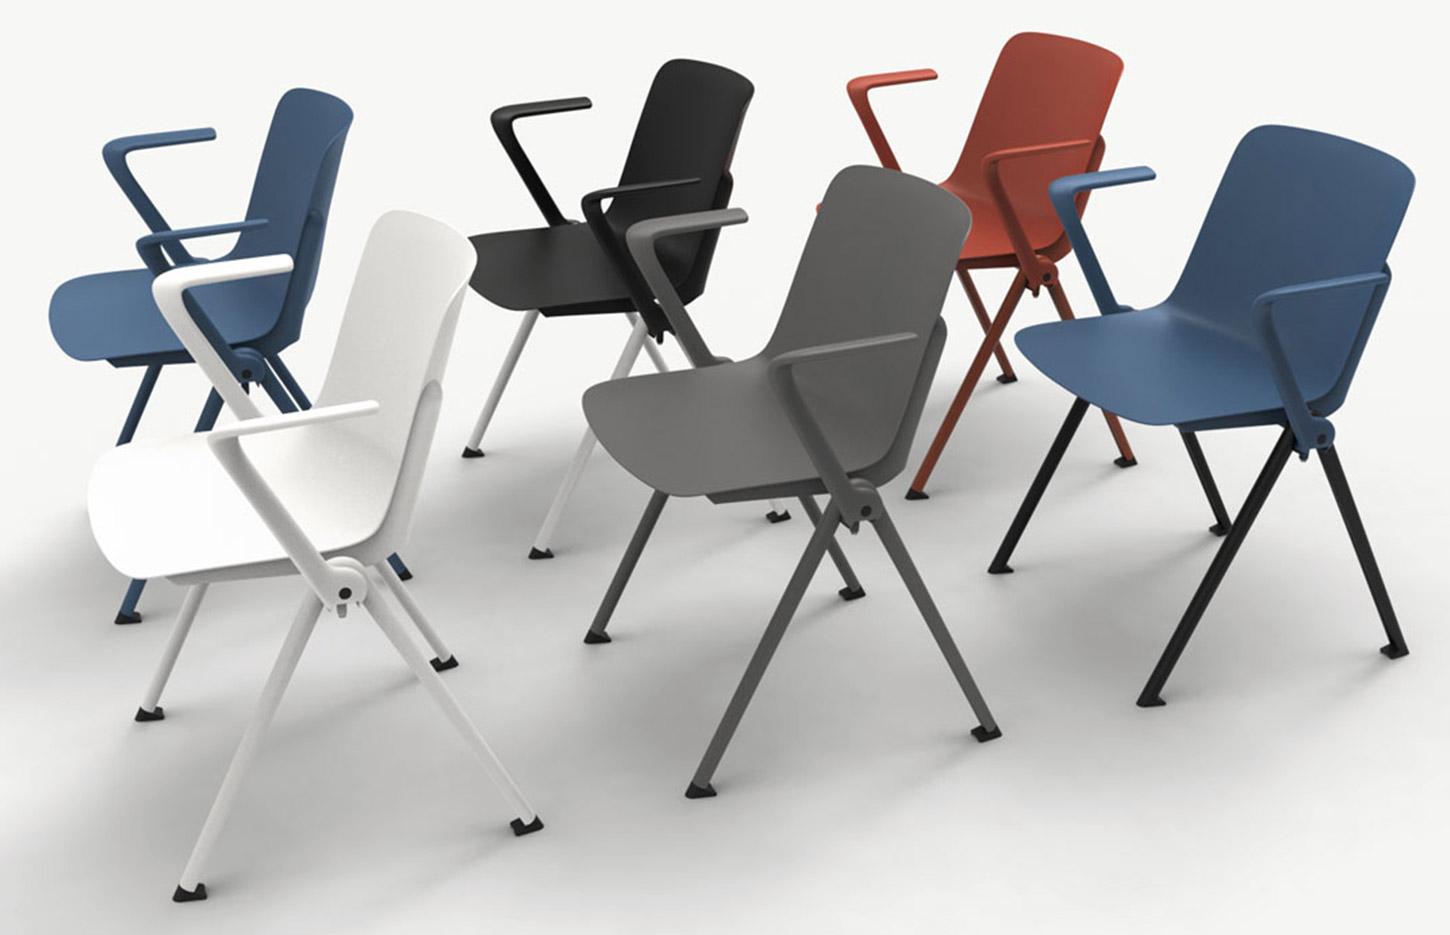 Chaise monocoque polypropylène structure en métal, gamme Minho Meet - France Bureau